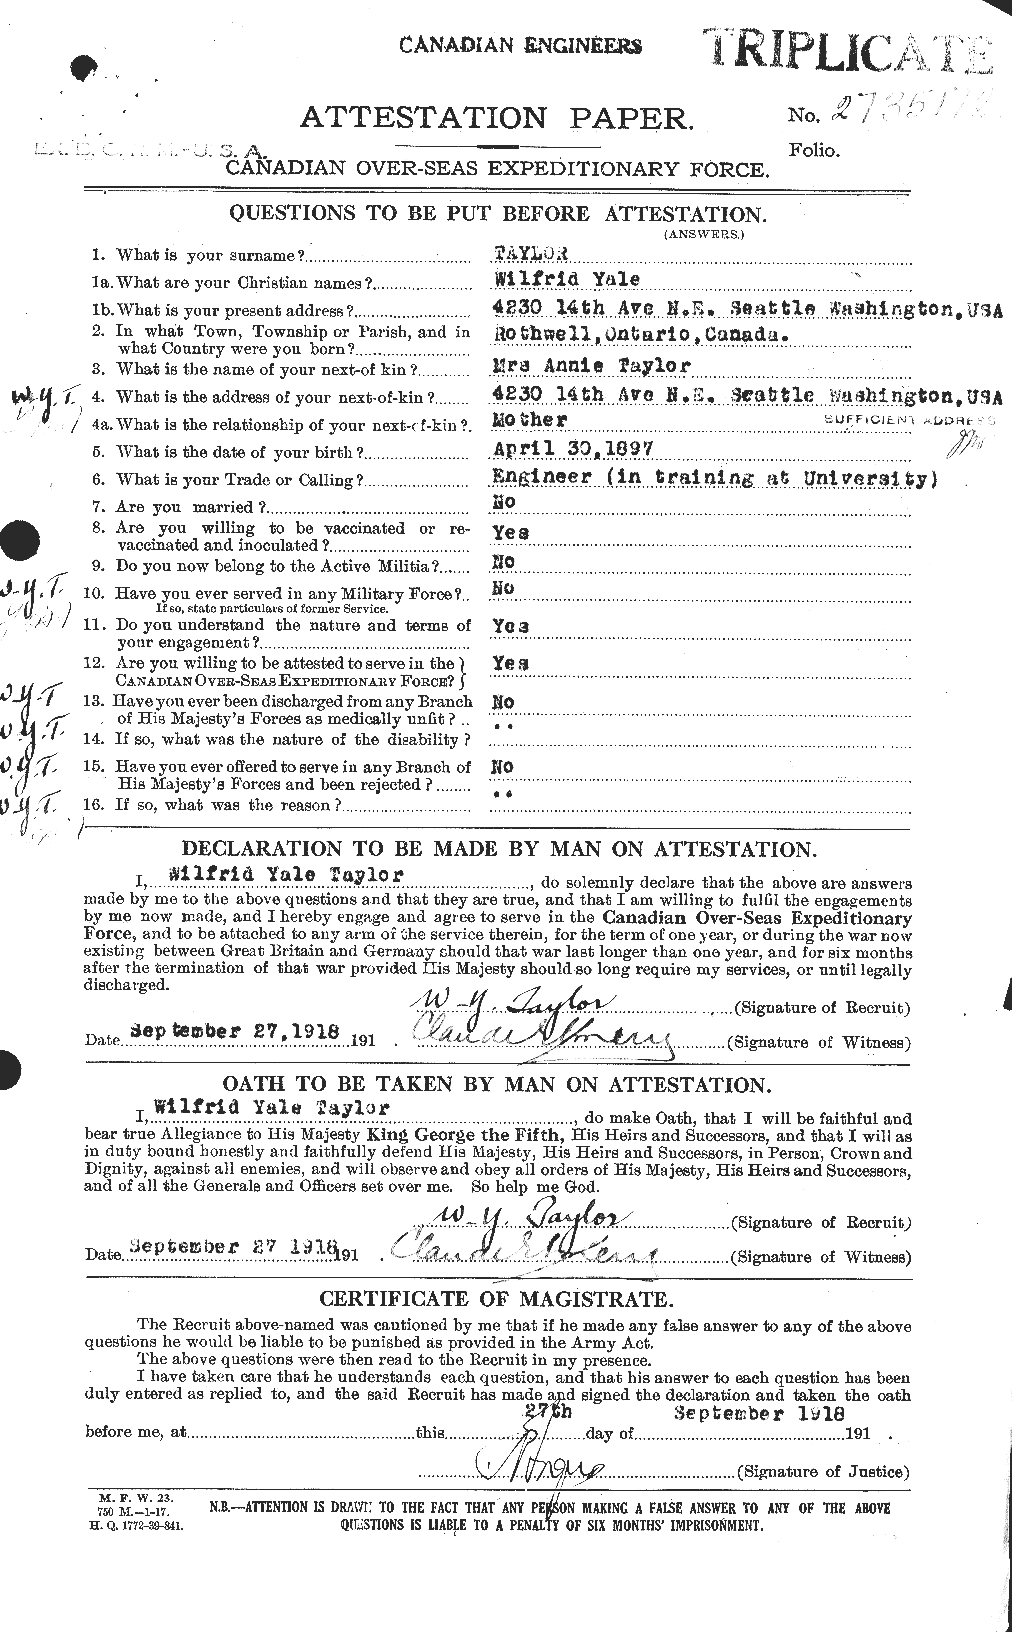 Dossiers du Personnel de la Première Guerre mondiale - CEC 628099a